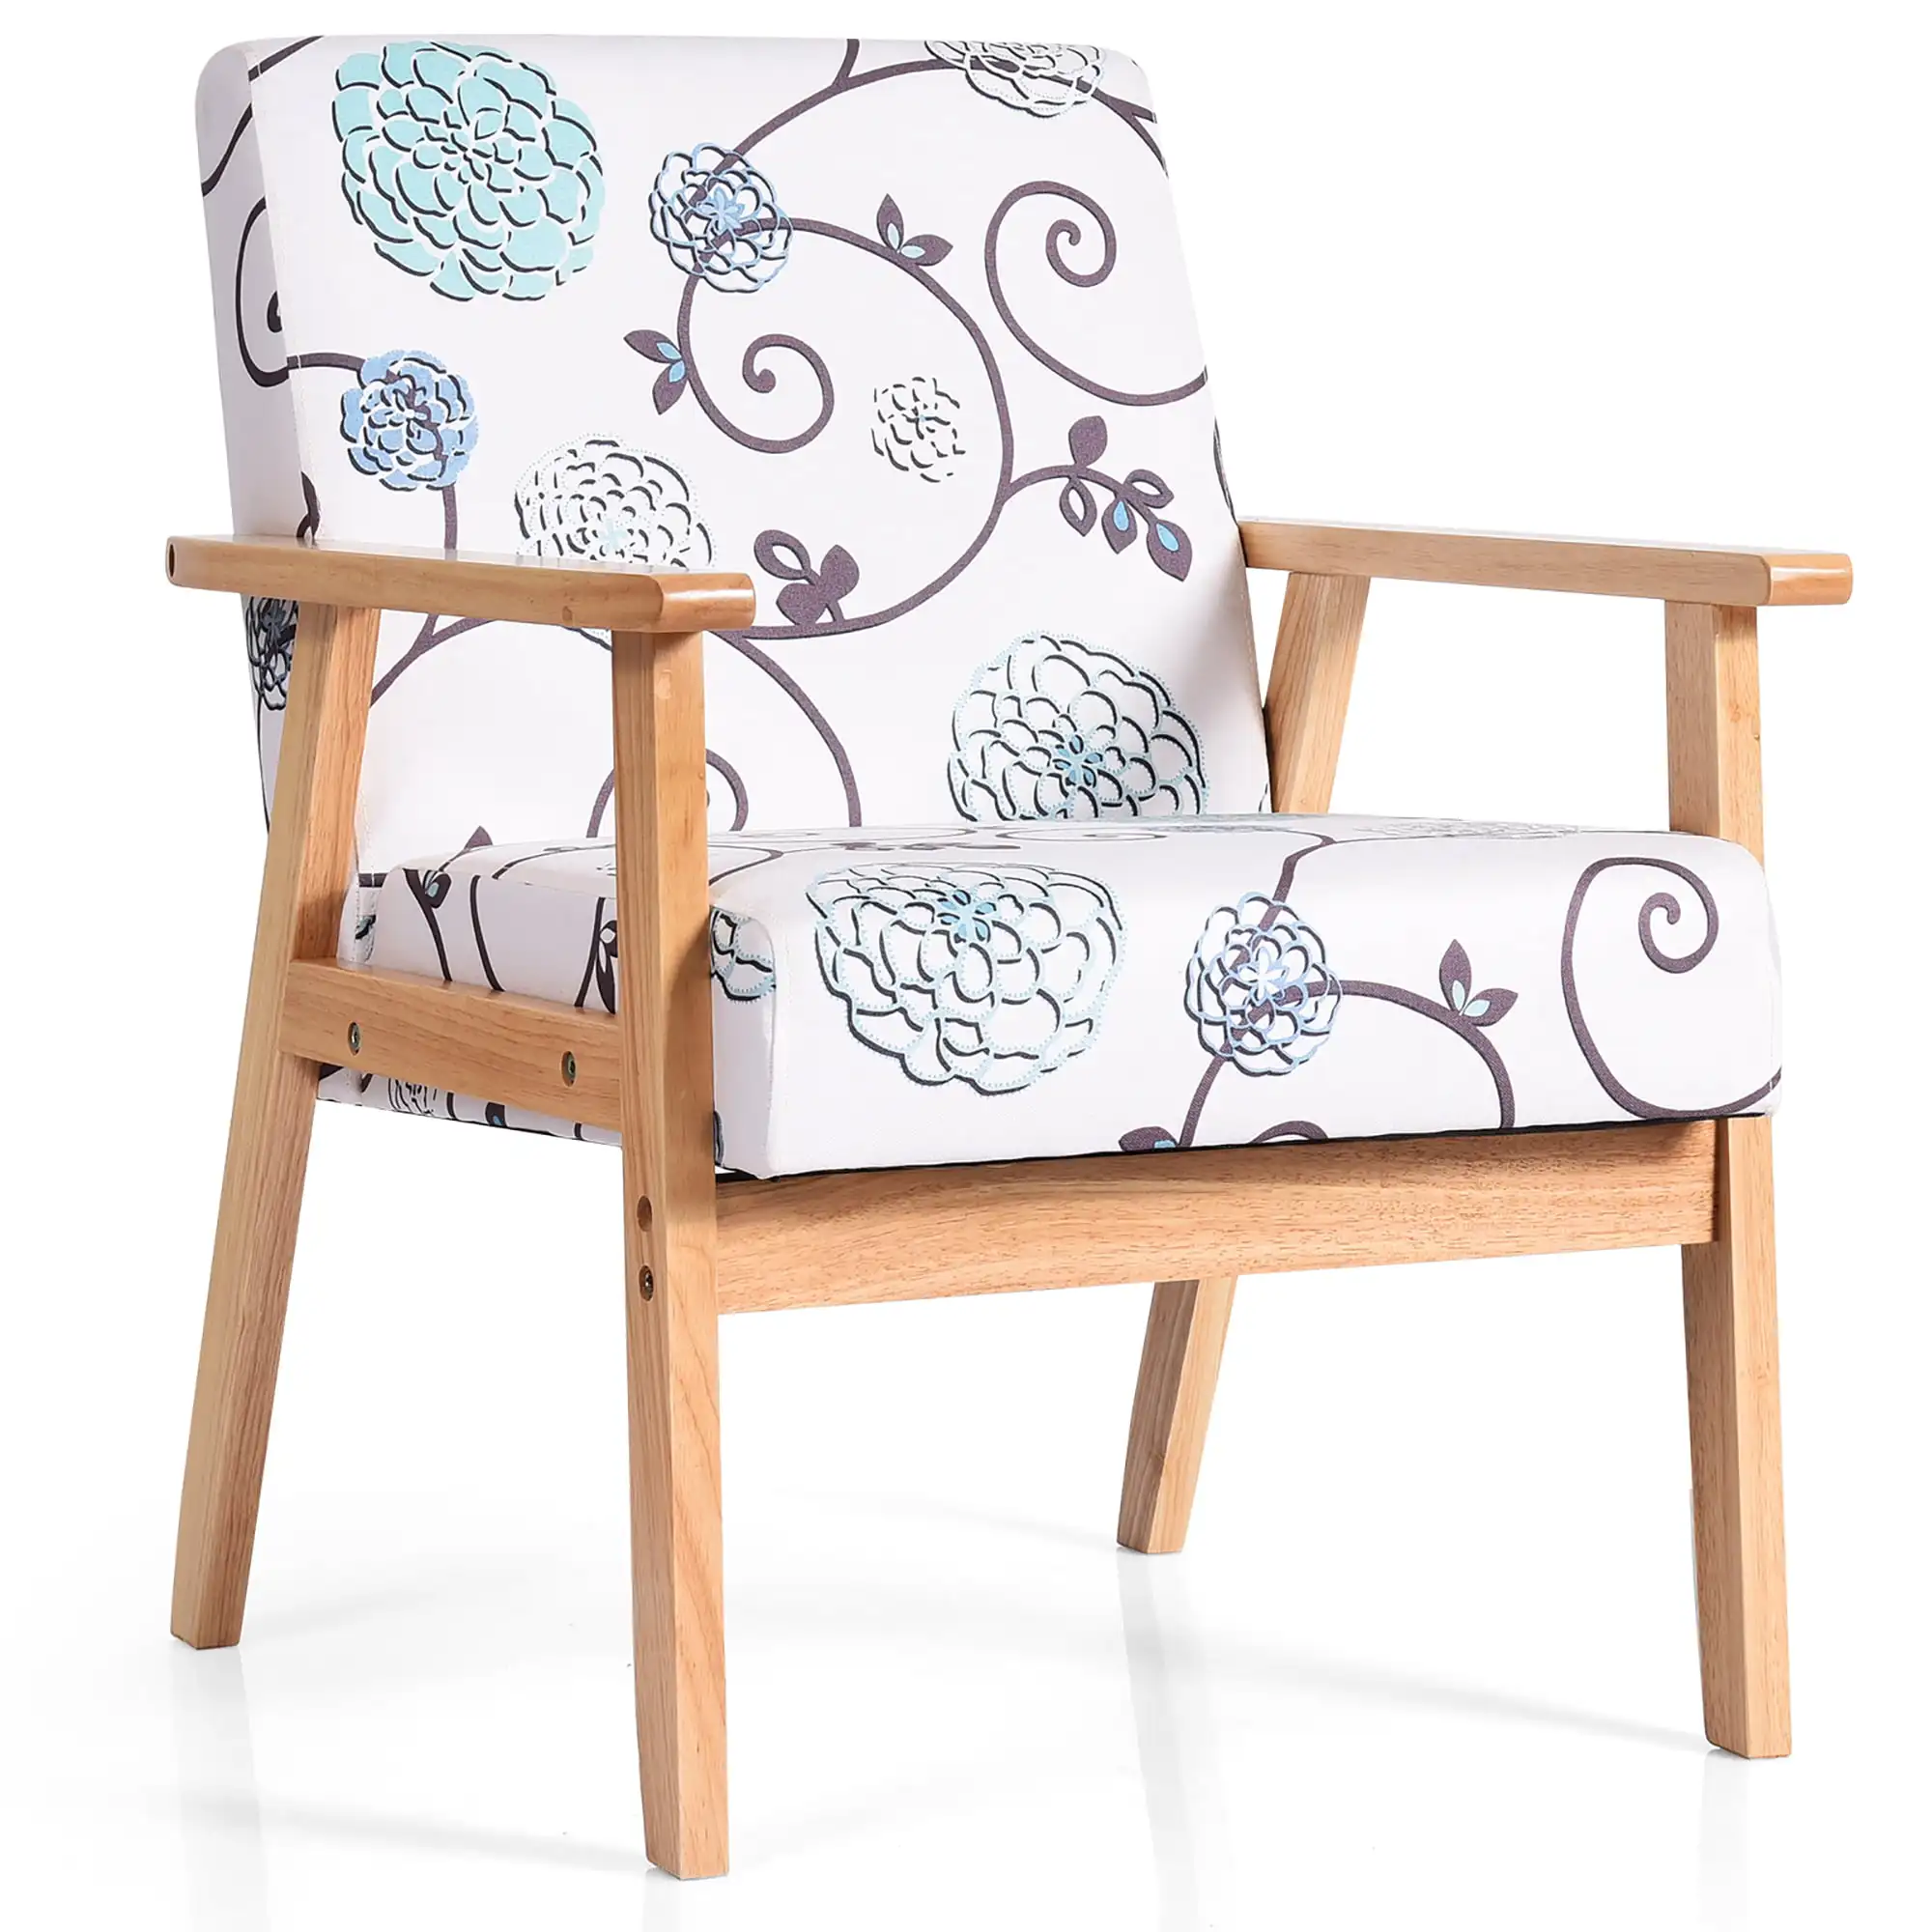 Кресло Costway Modern Accent, Тканевое кресло для отдыха с ножкой из каучукового дерева Белого и синего цветов